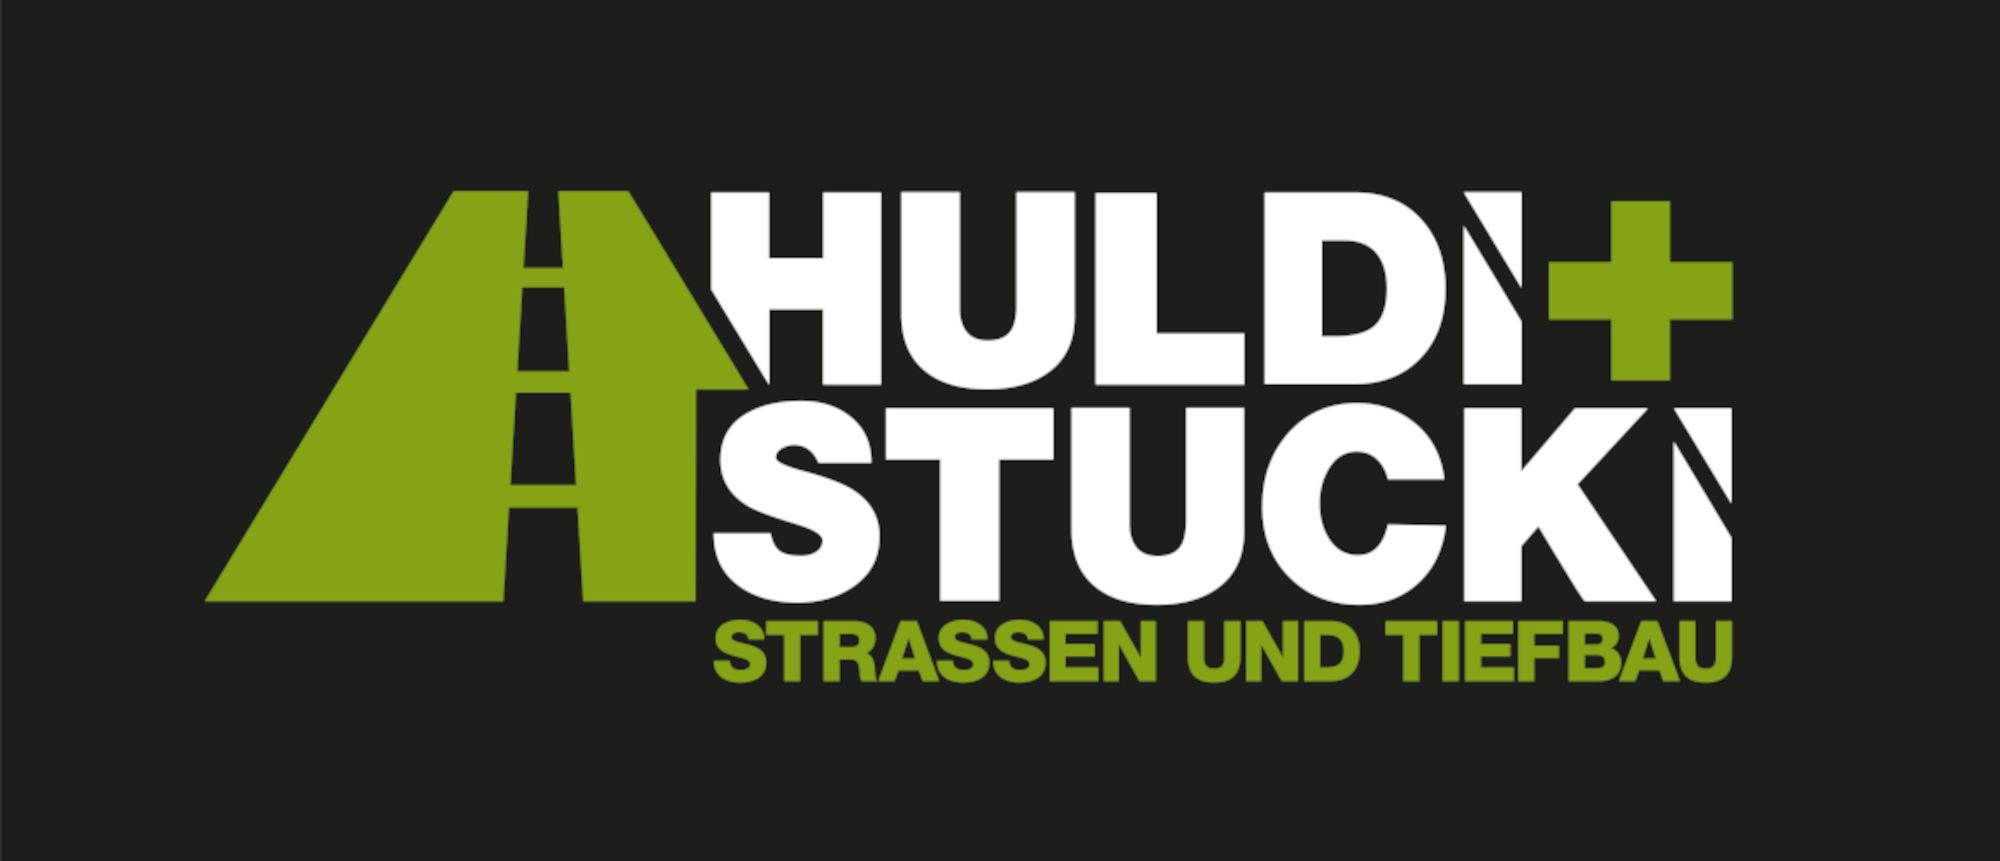 Huldi + Stucki Strassen- und Tiefbau AG